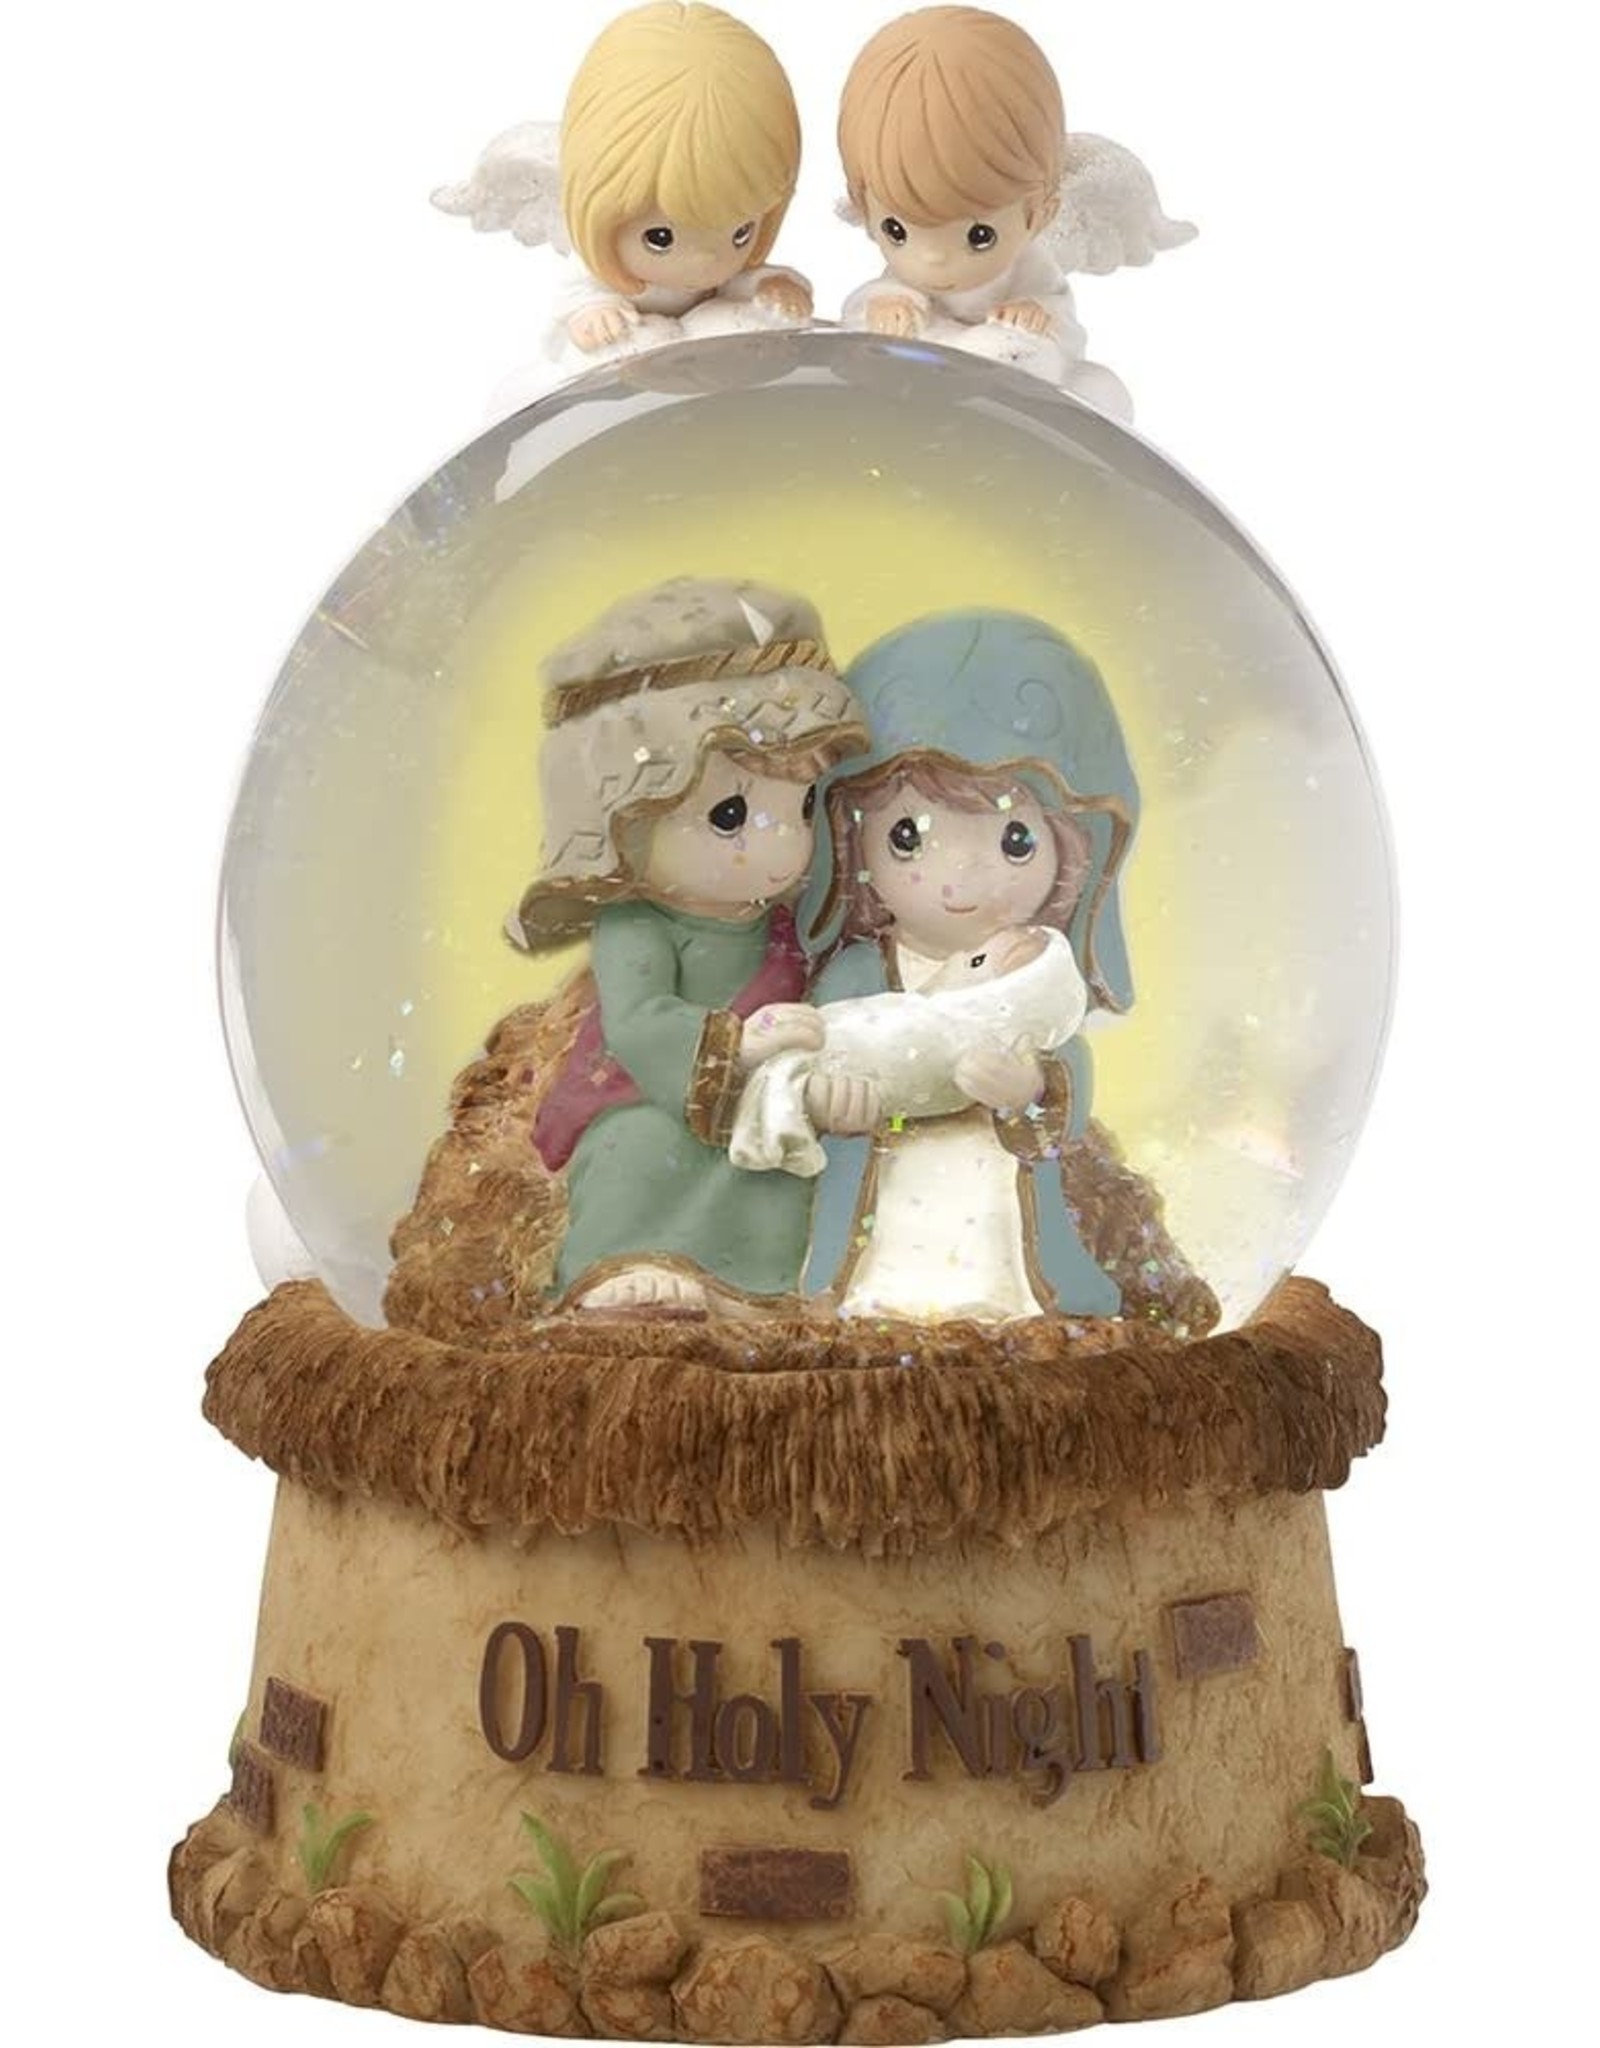 Precious Moments Nativity Snow Globe - Oh Holy Night